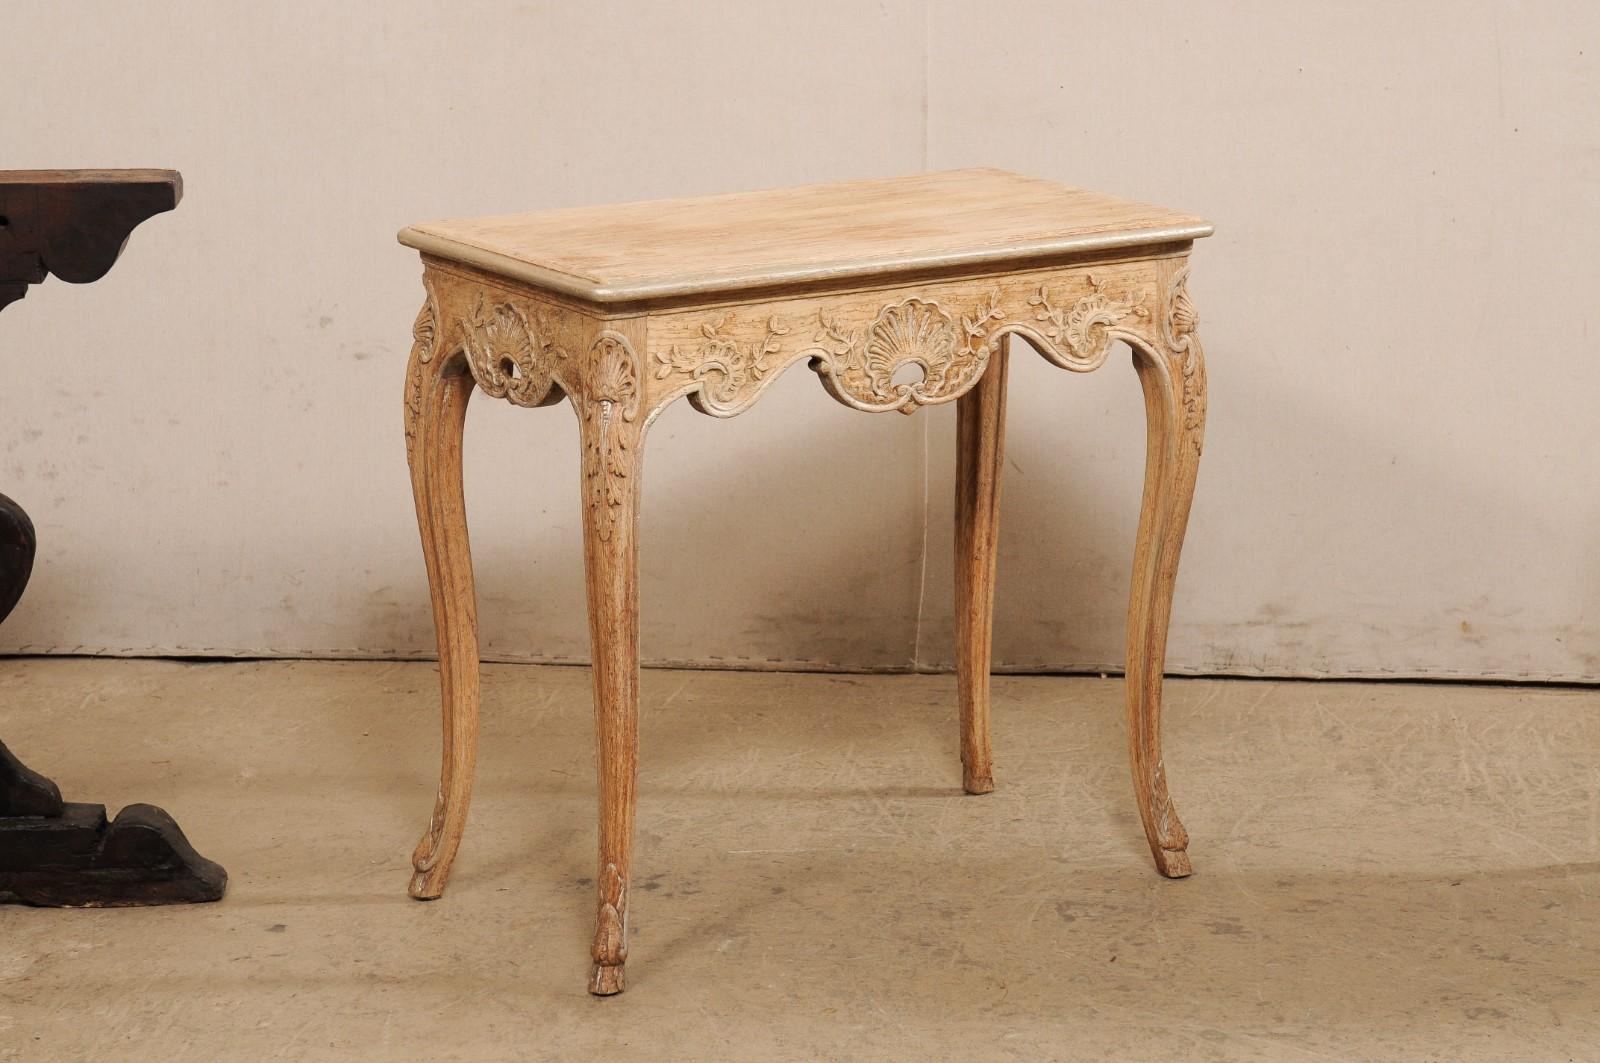 Ein französisches Paar kleinerer geschnitzter Holztische aus dem frühen 20. Jahrhundert. Diese antiken Tische aus Frankreich haben jeweils leicht ausladende rechteckige Platten mit sanft abgerundeten Ecken über Schürzen, die aufwändig von Hand mit